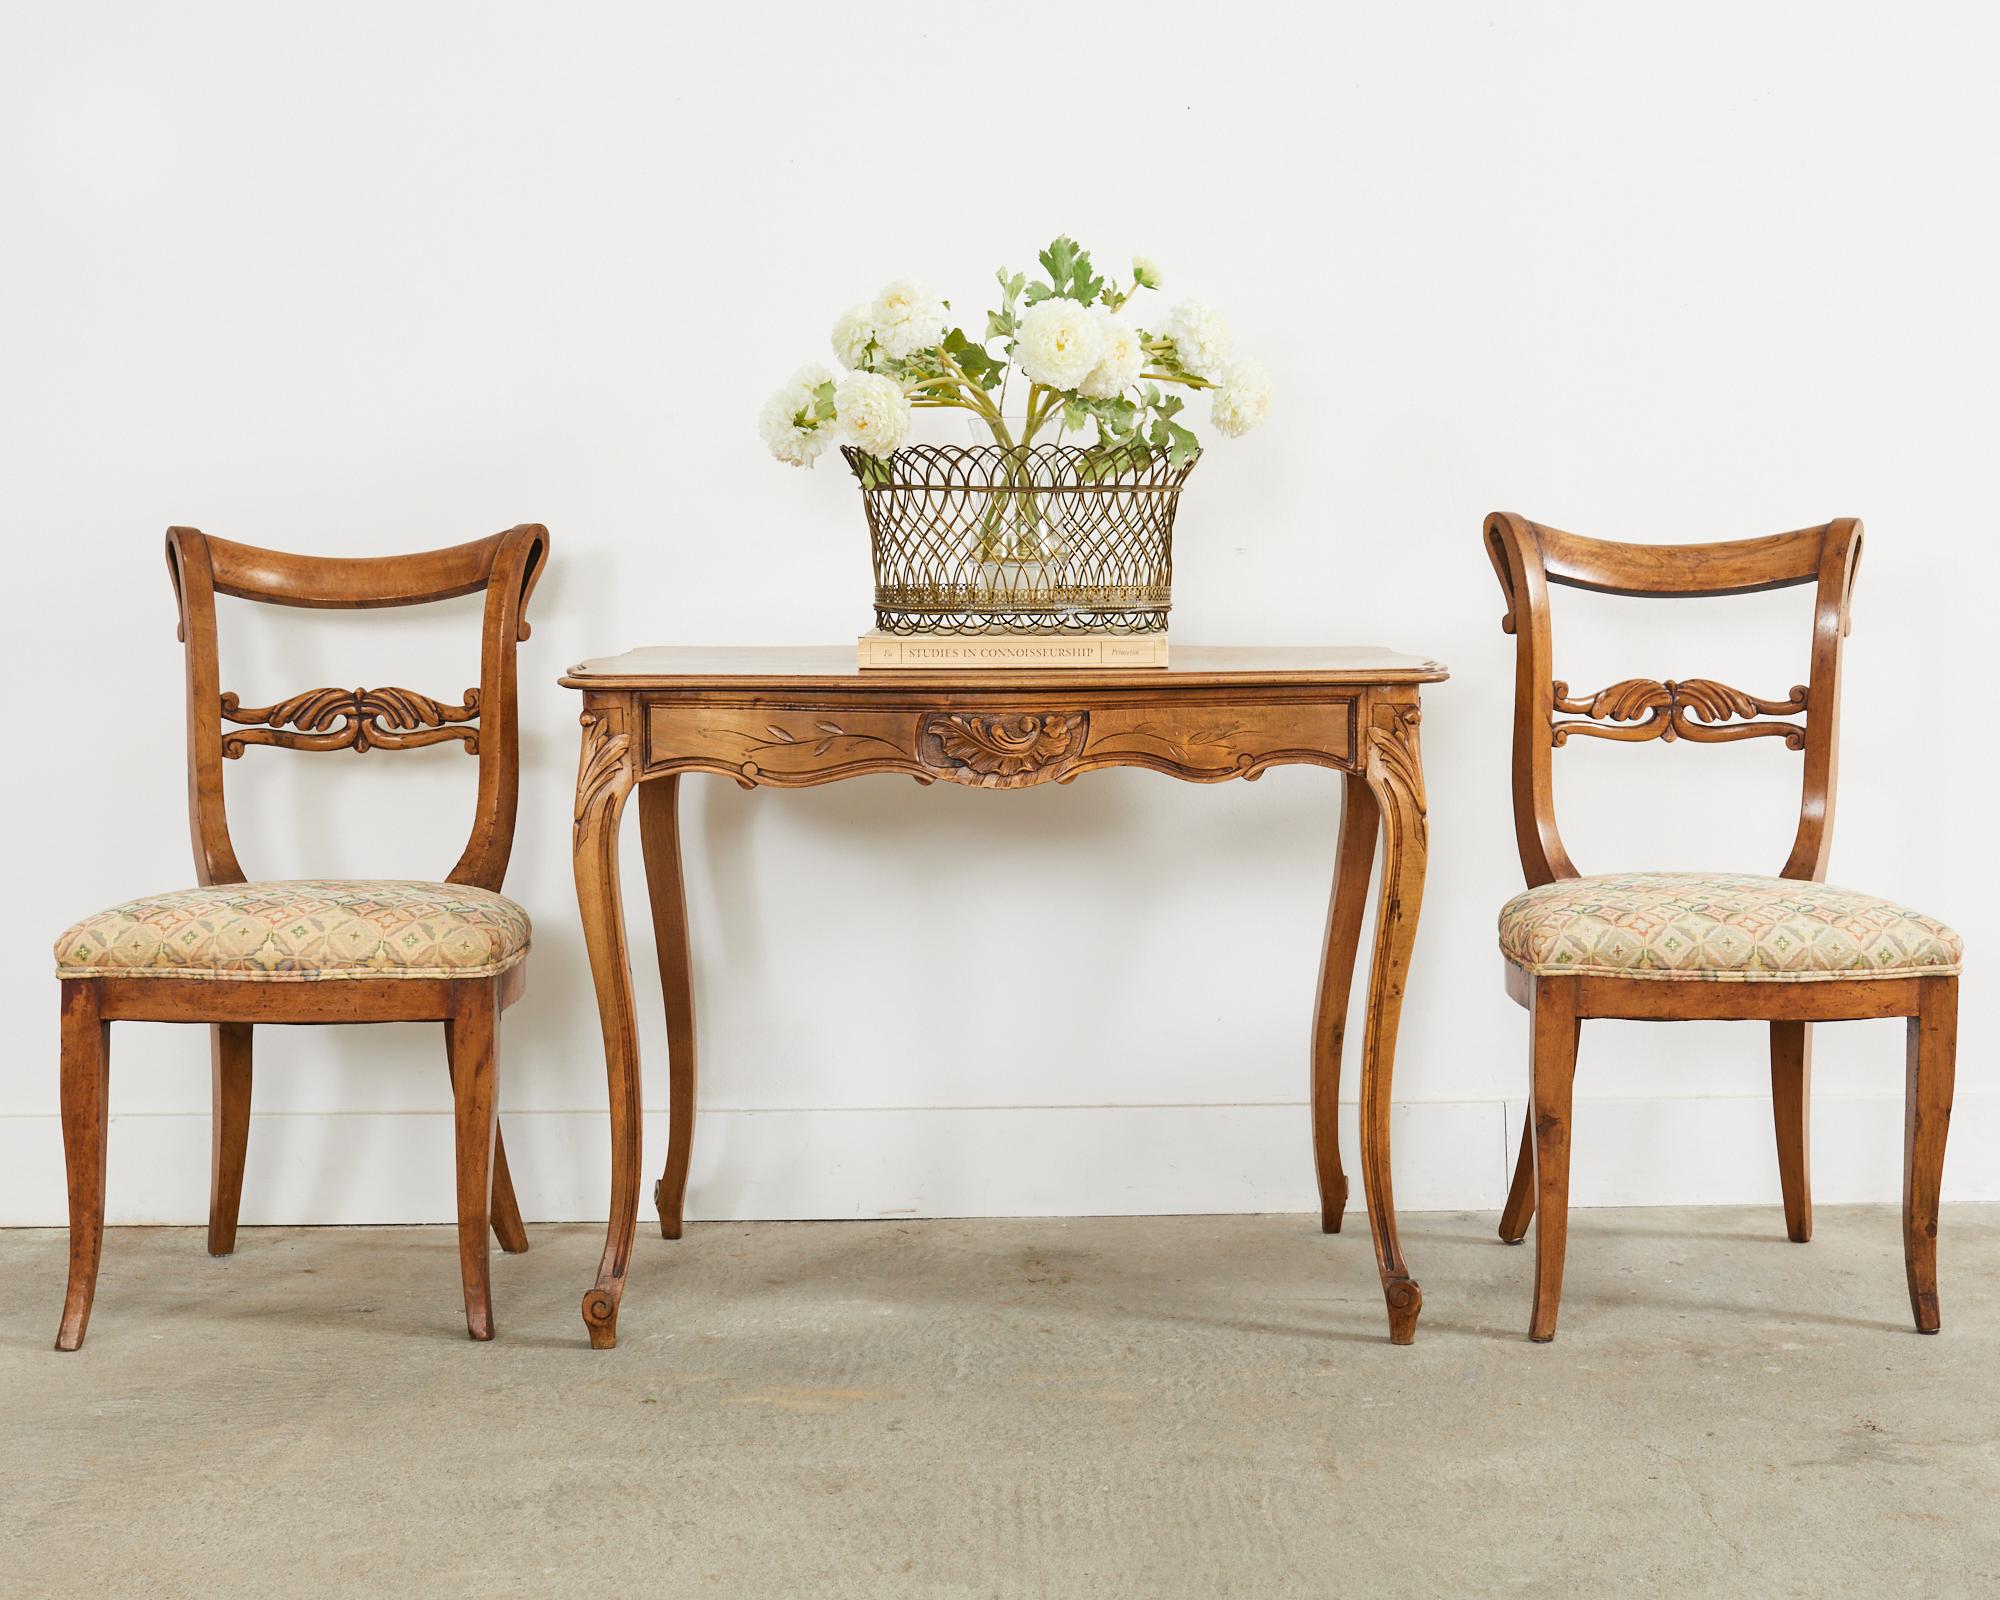 Magnifique paire de chaises de hall françaises du 19ème siècle en bois fruitier. Les chaises sont fabriquées à la manière et à l'époque de Louis Philippe, tout en conservant des éléments de design de la période Empire. Les cadres ont des dossiers et